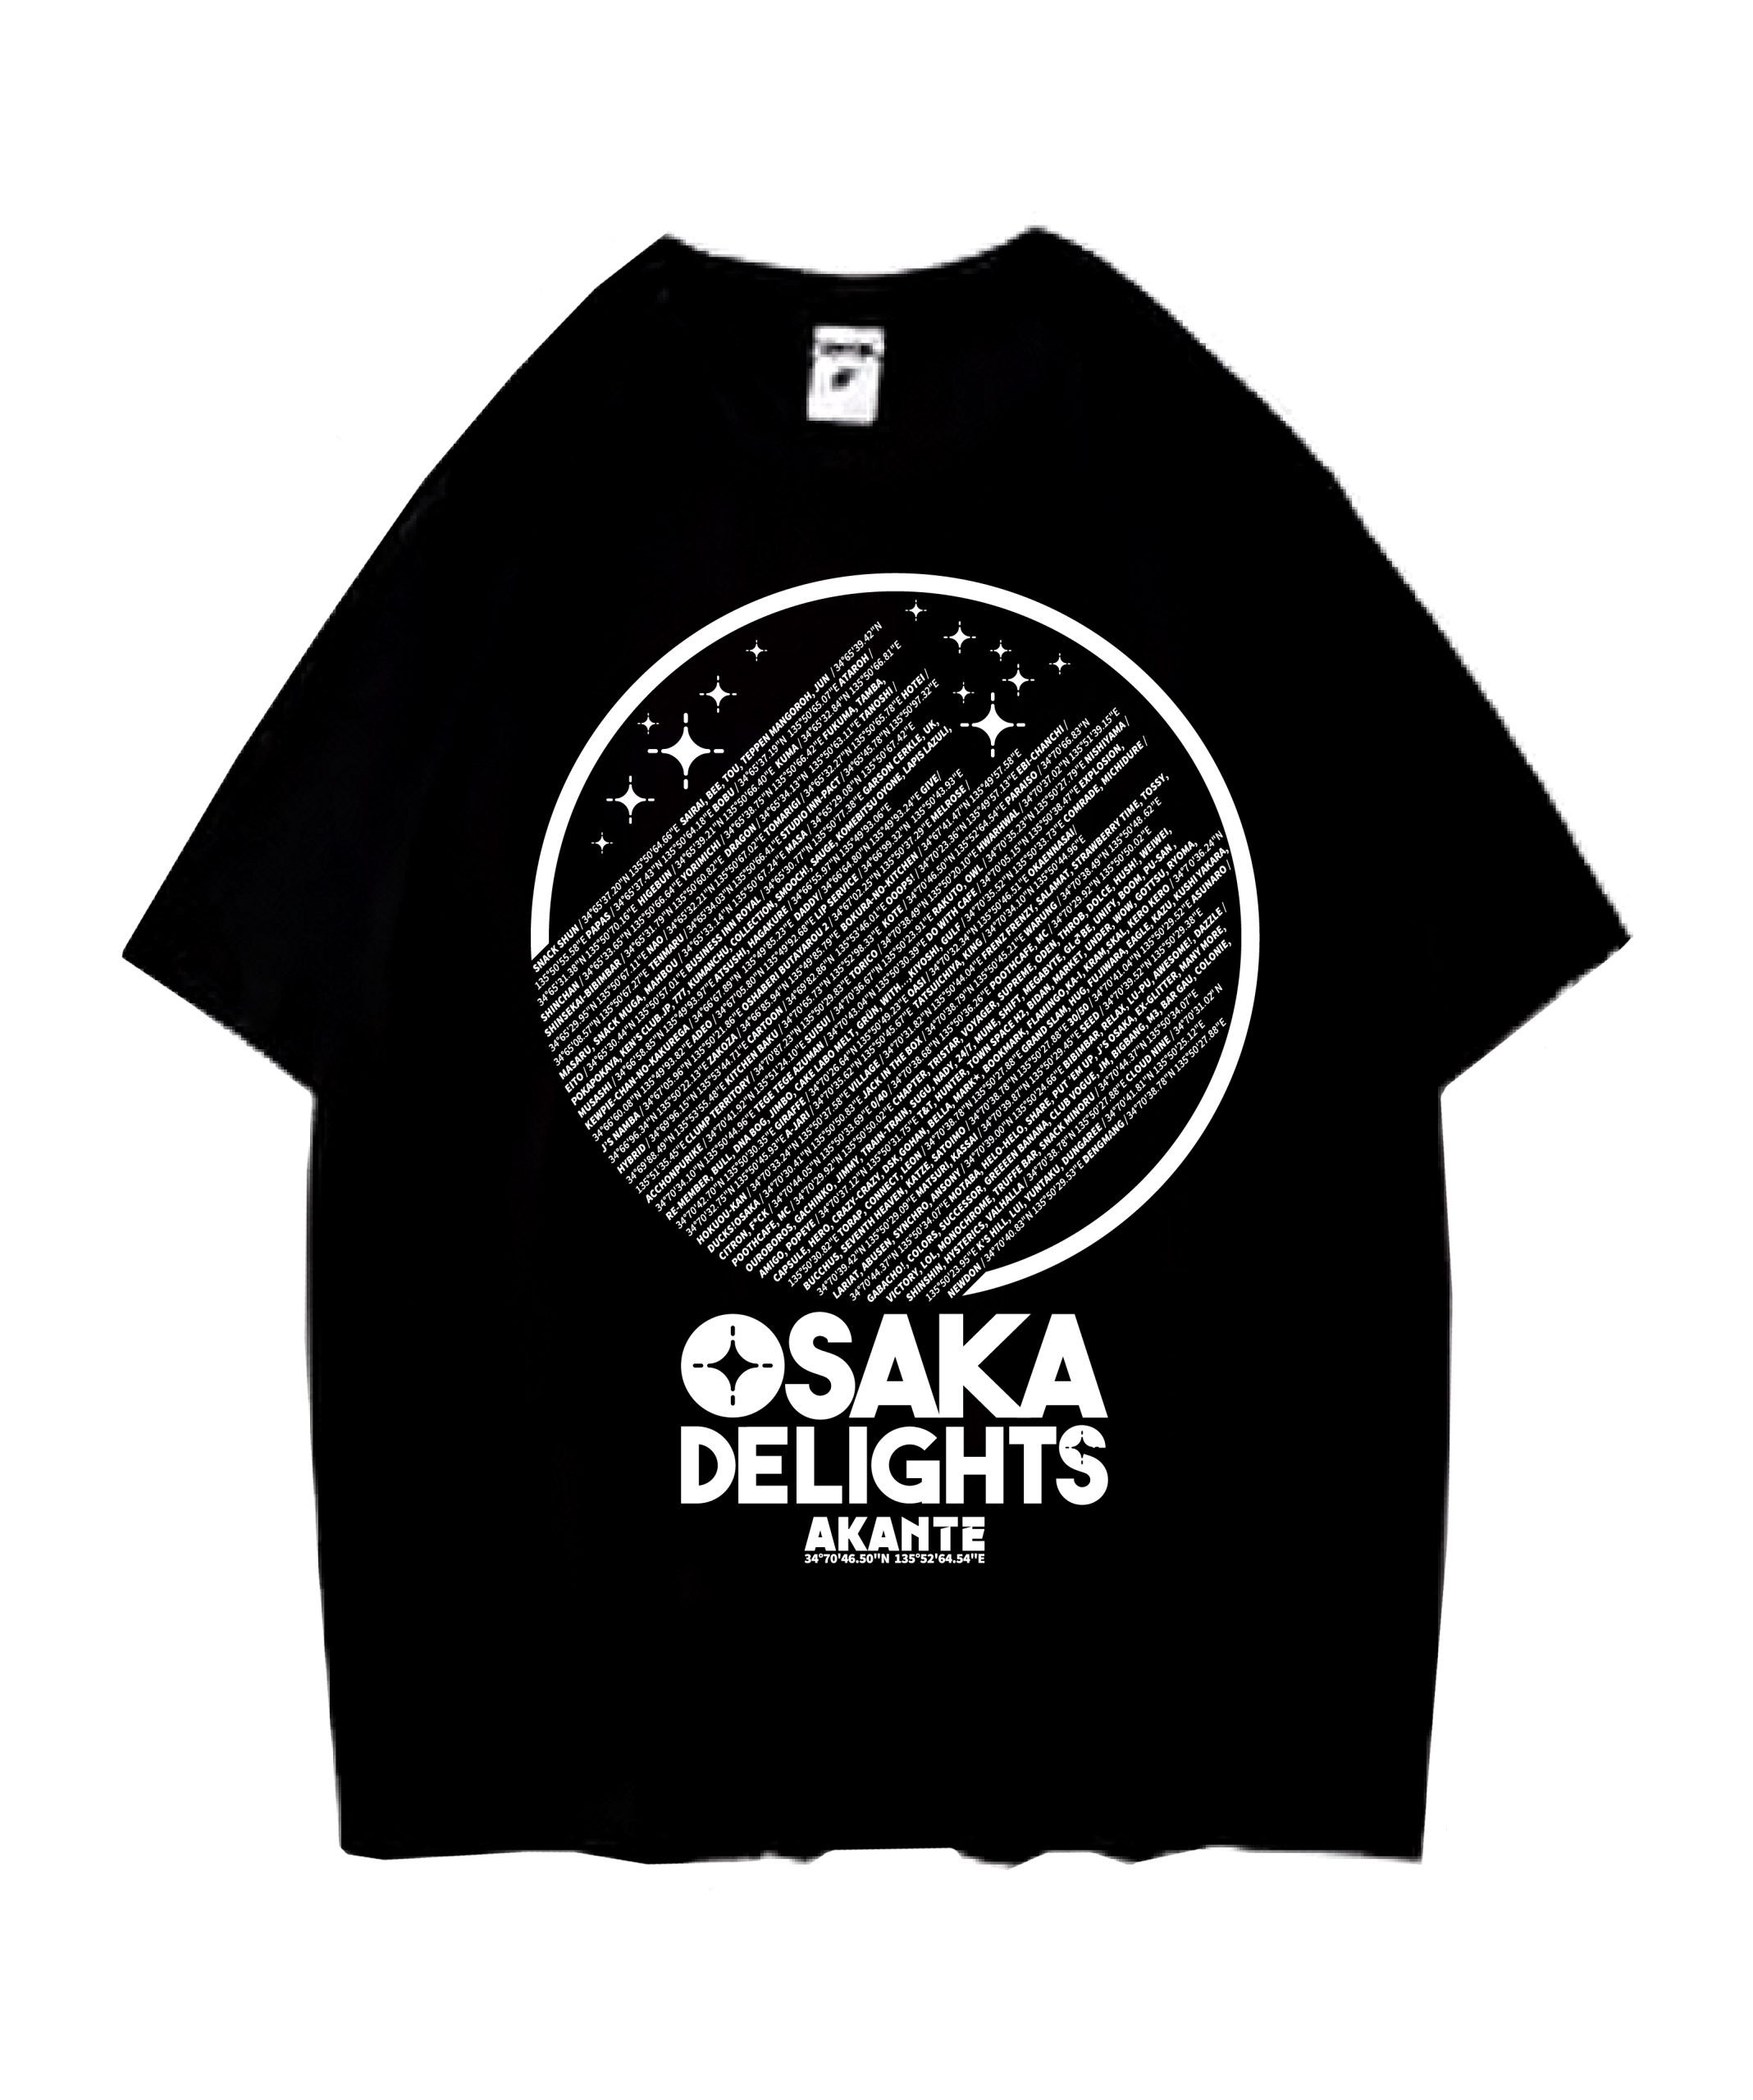 OSAKA DELIGHTS Tシャツ ブラックxホワイト